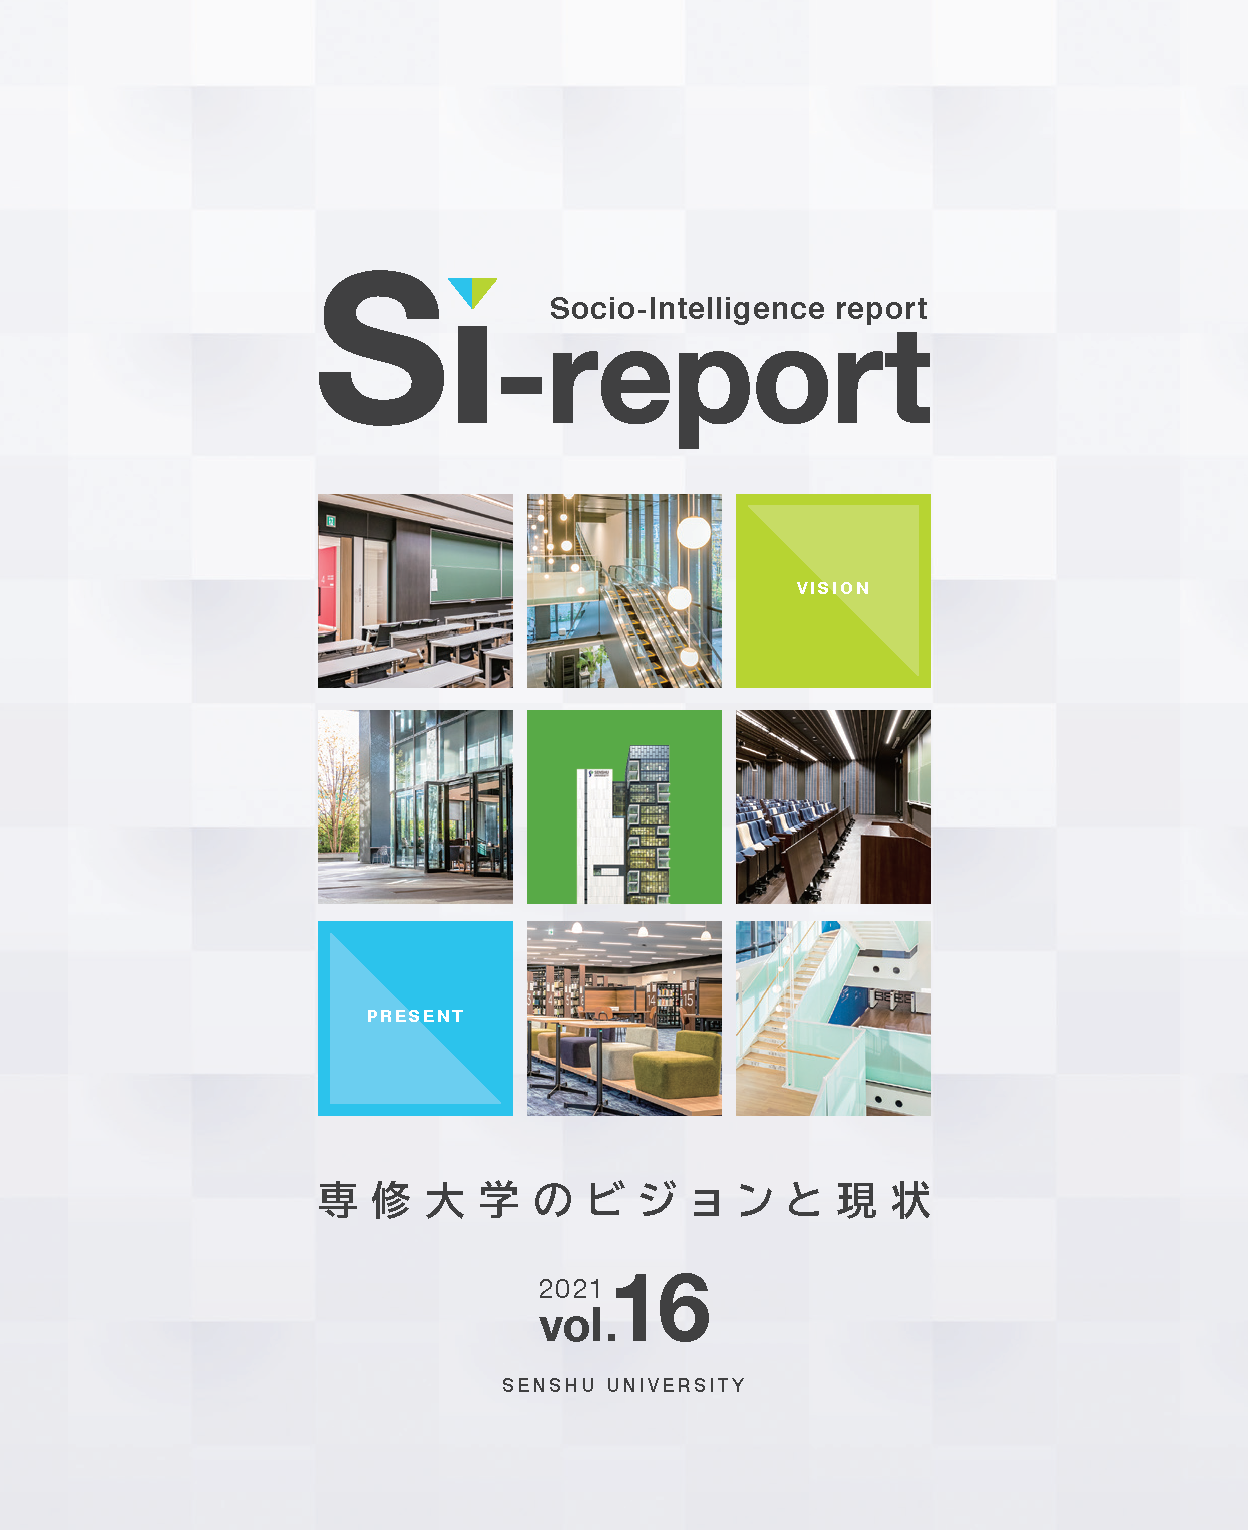 Si-report vol.16